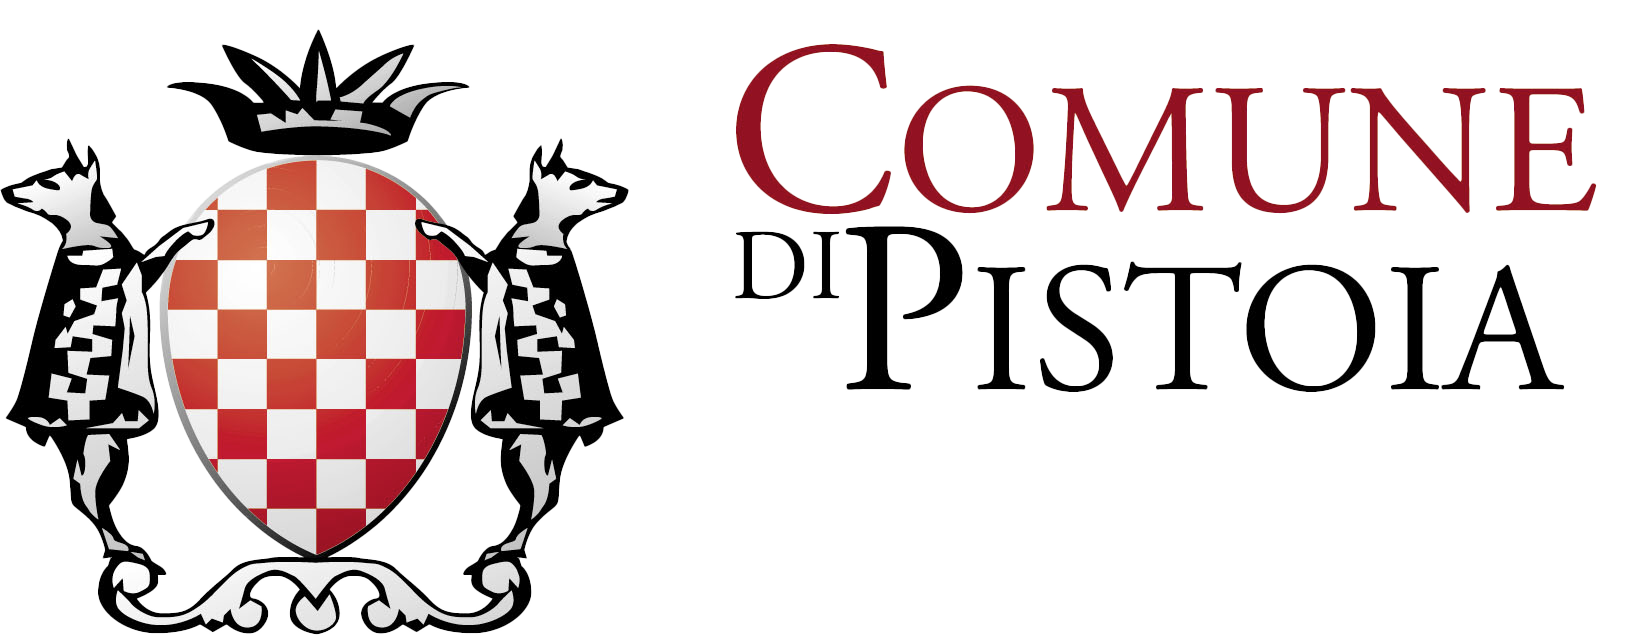 logo_comune_pistoia